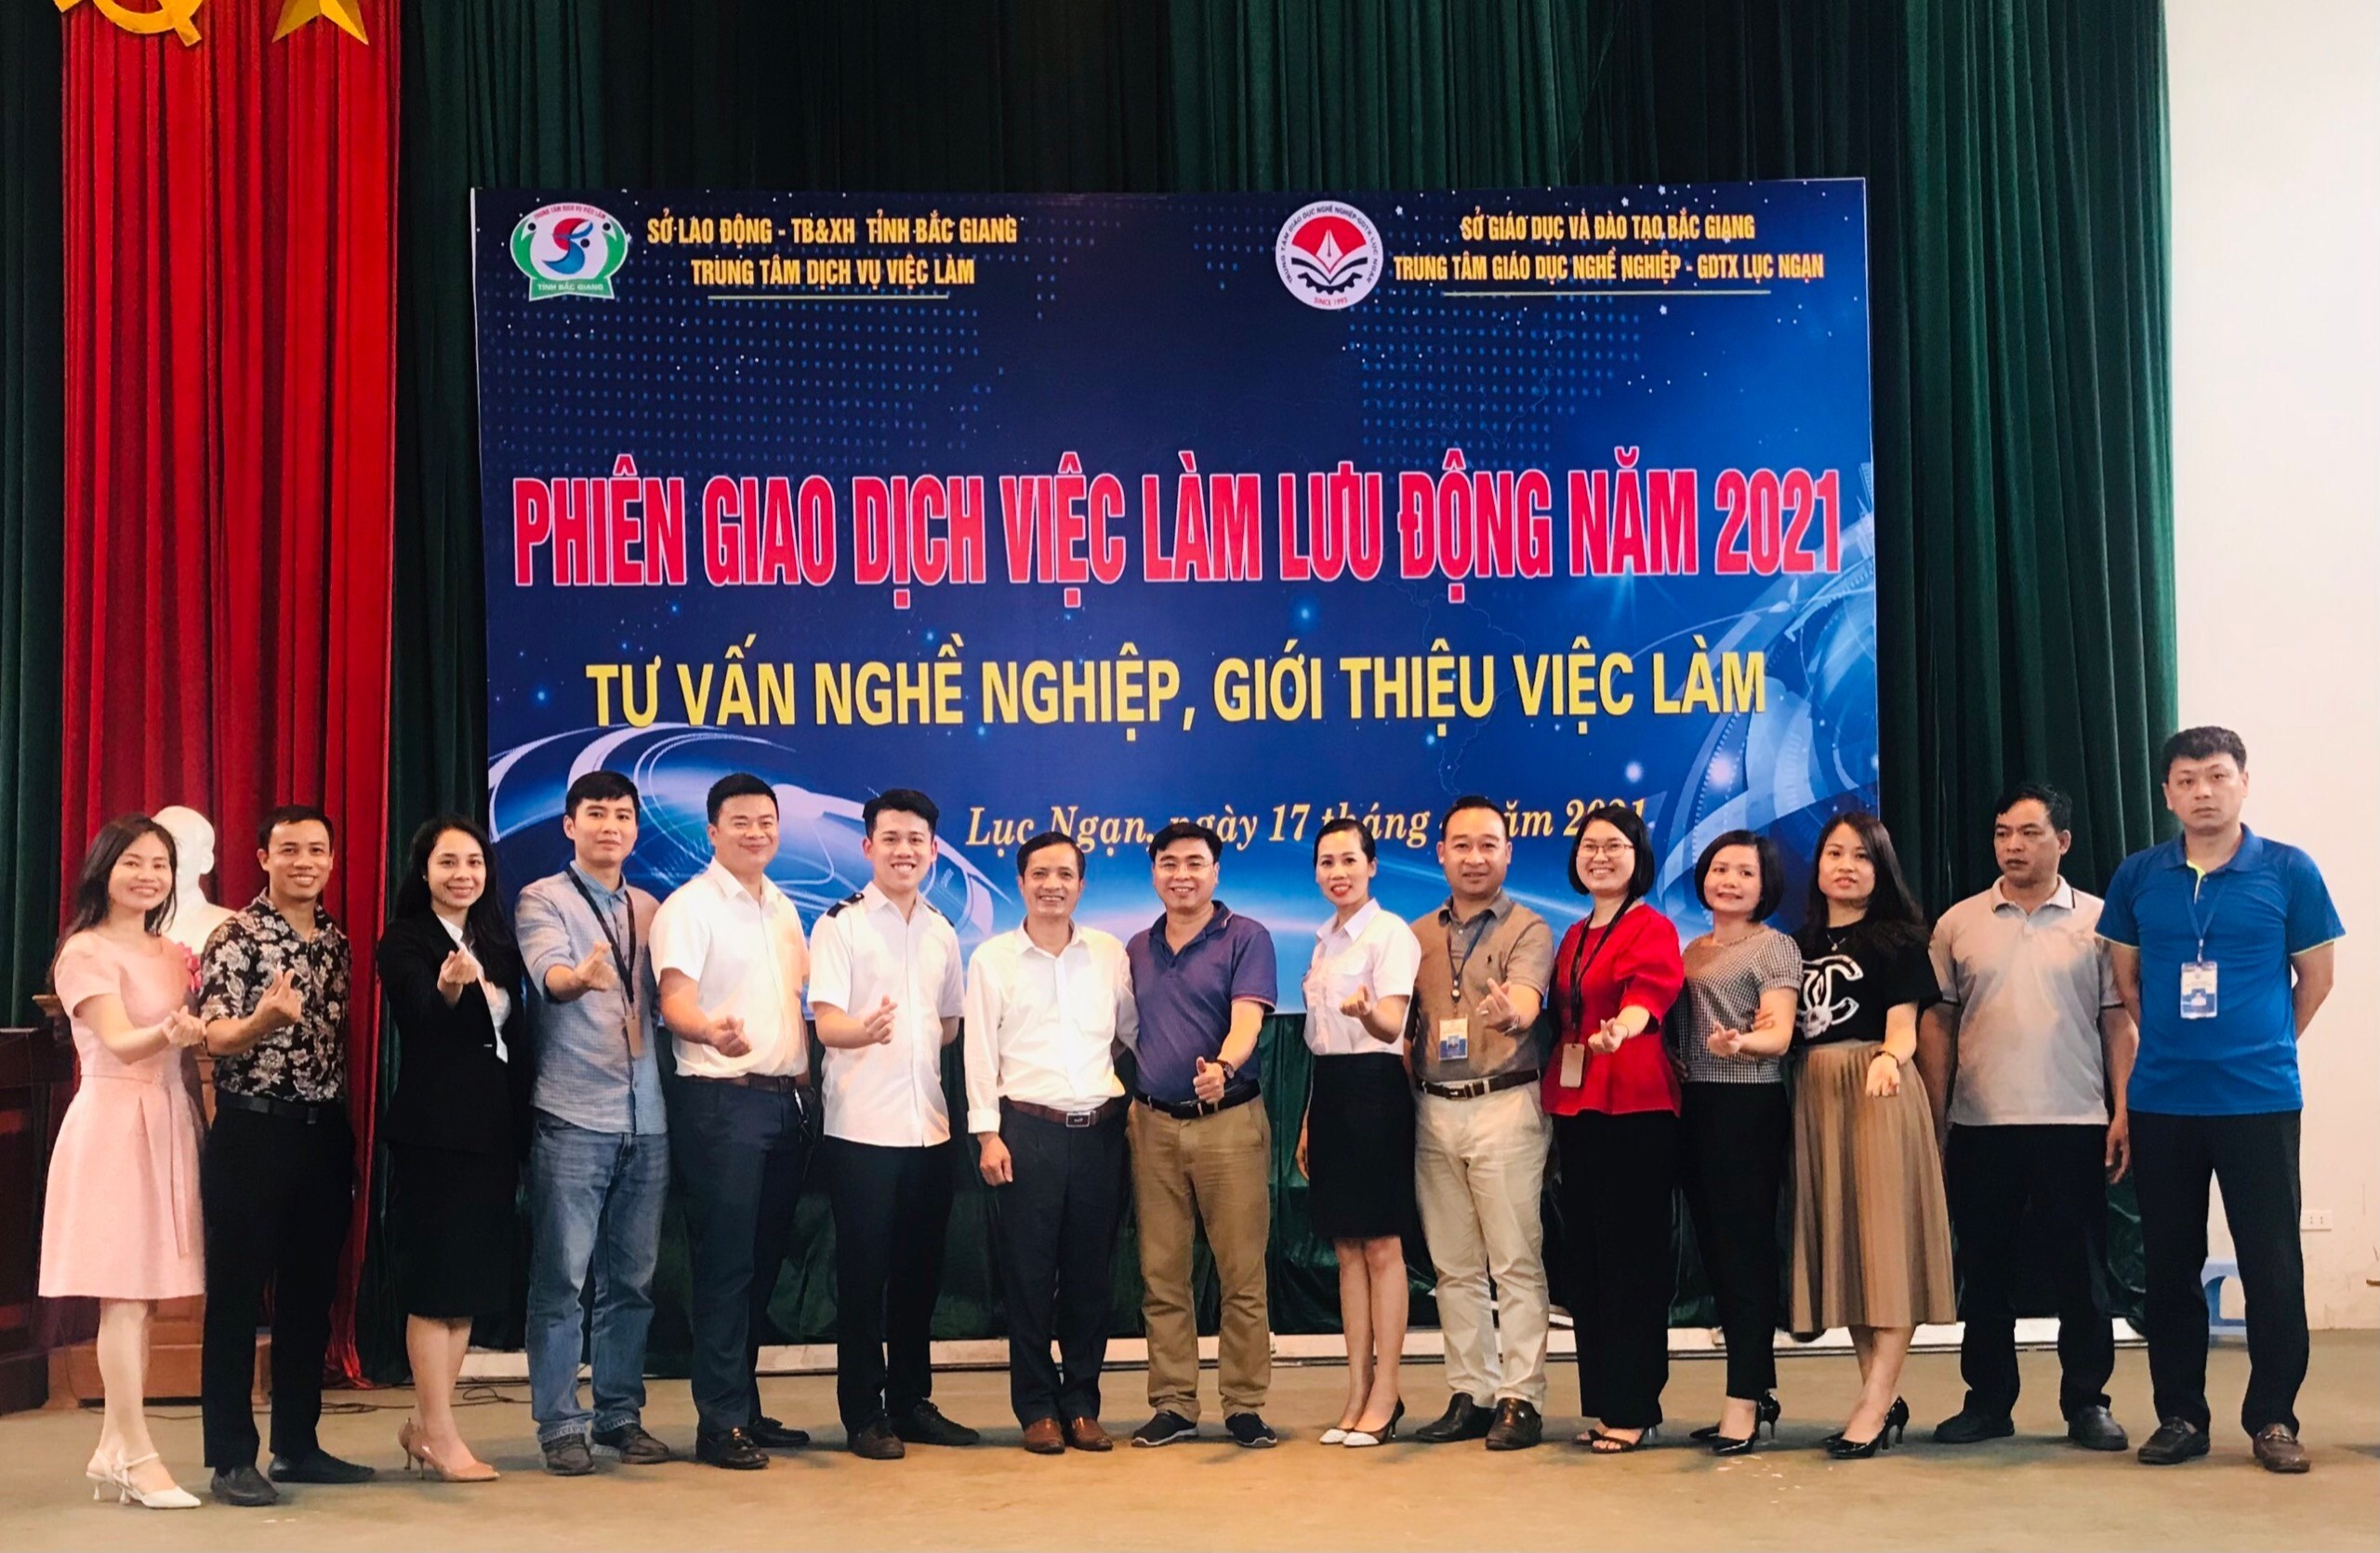 TVNAS tham gia Phiên giao dịch việc làm lưu động năm 2021 tại huyện Lục Ngạn, tỉnh Bắc Giang